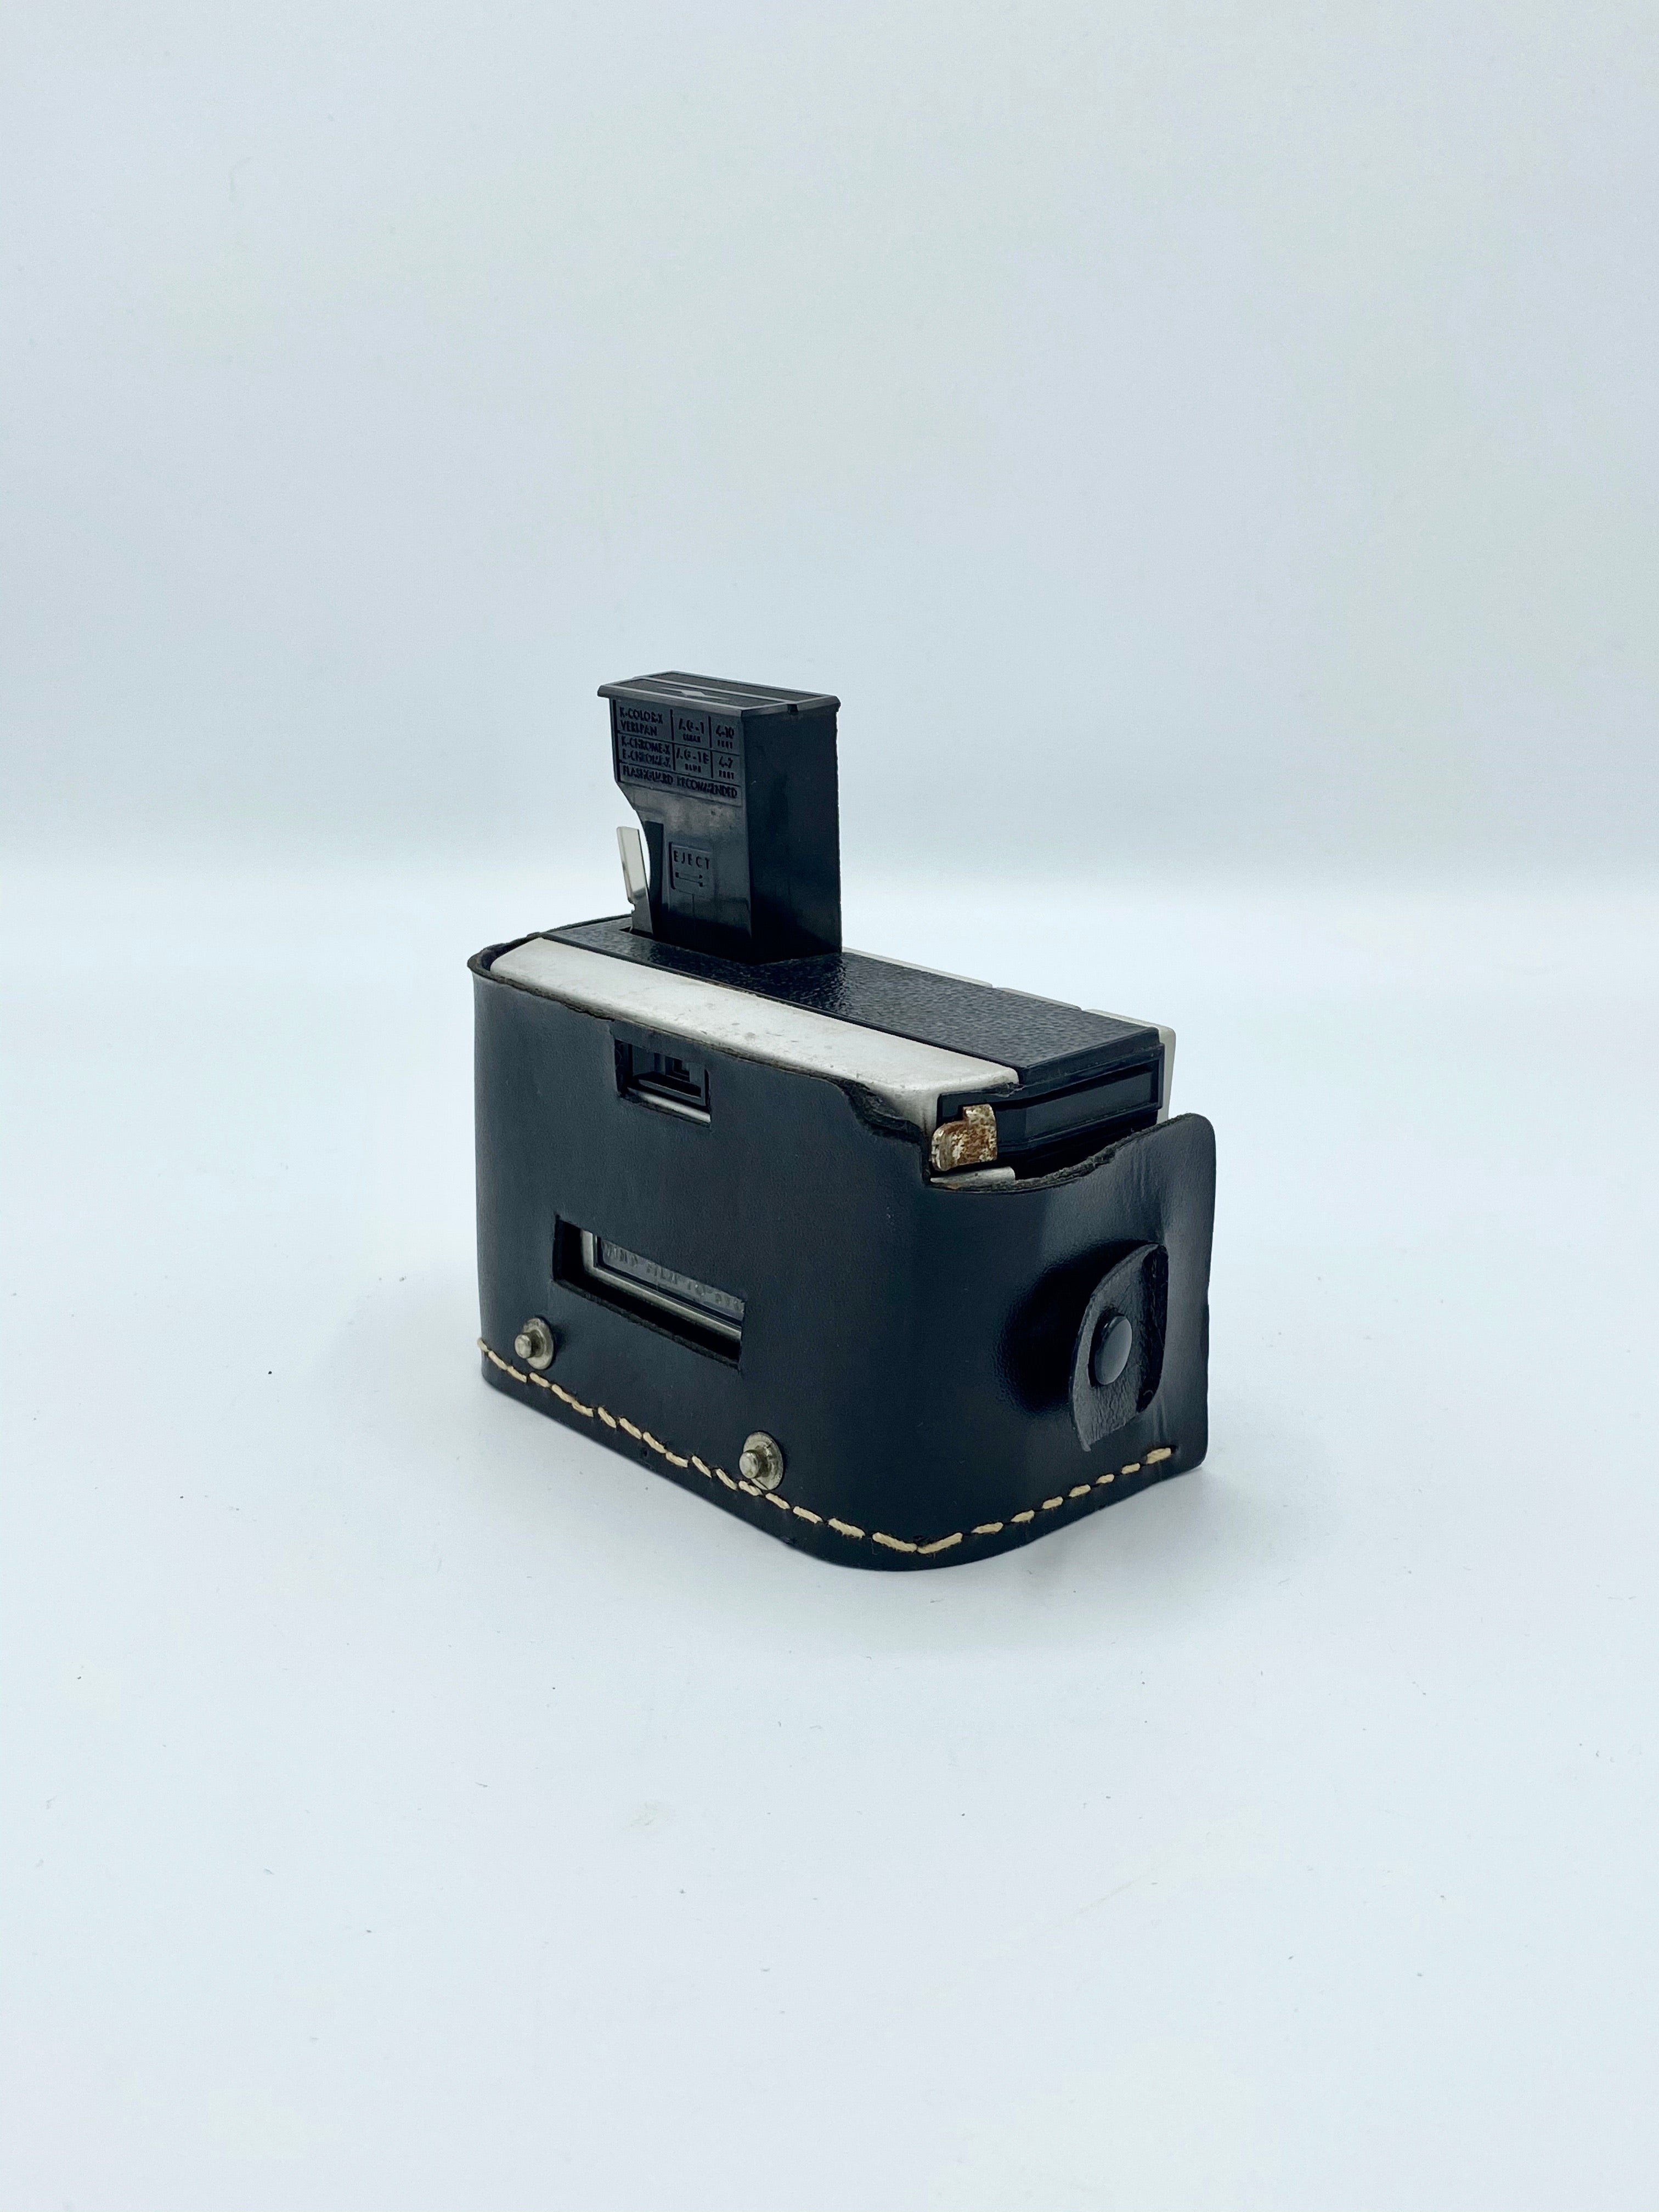 Kodak Instamatic 100 Camera & Leather Case